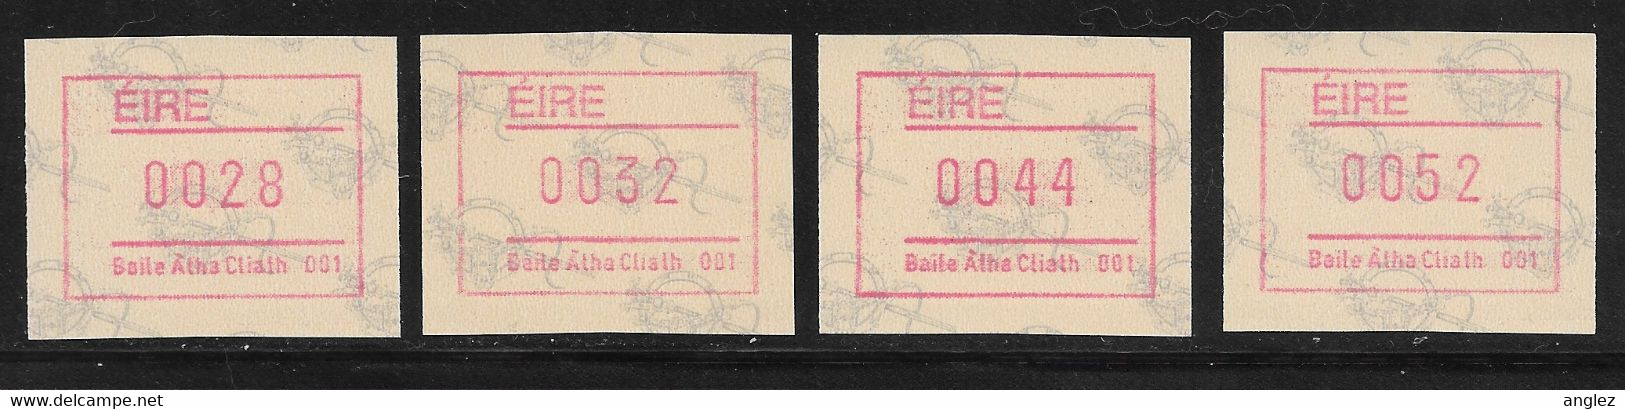 Ireland - 1992 Tara Brooch ATM / Frama Labels 4v MNH - Franking Labels